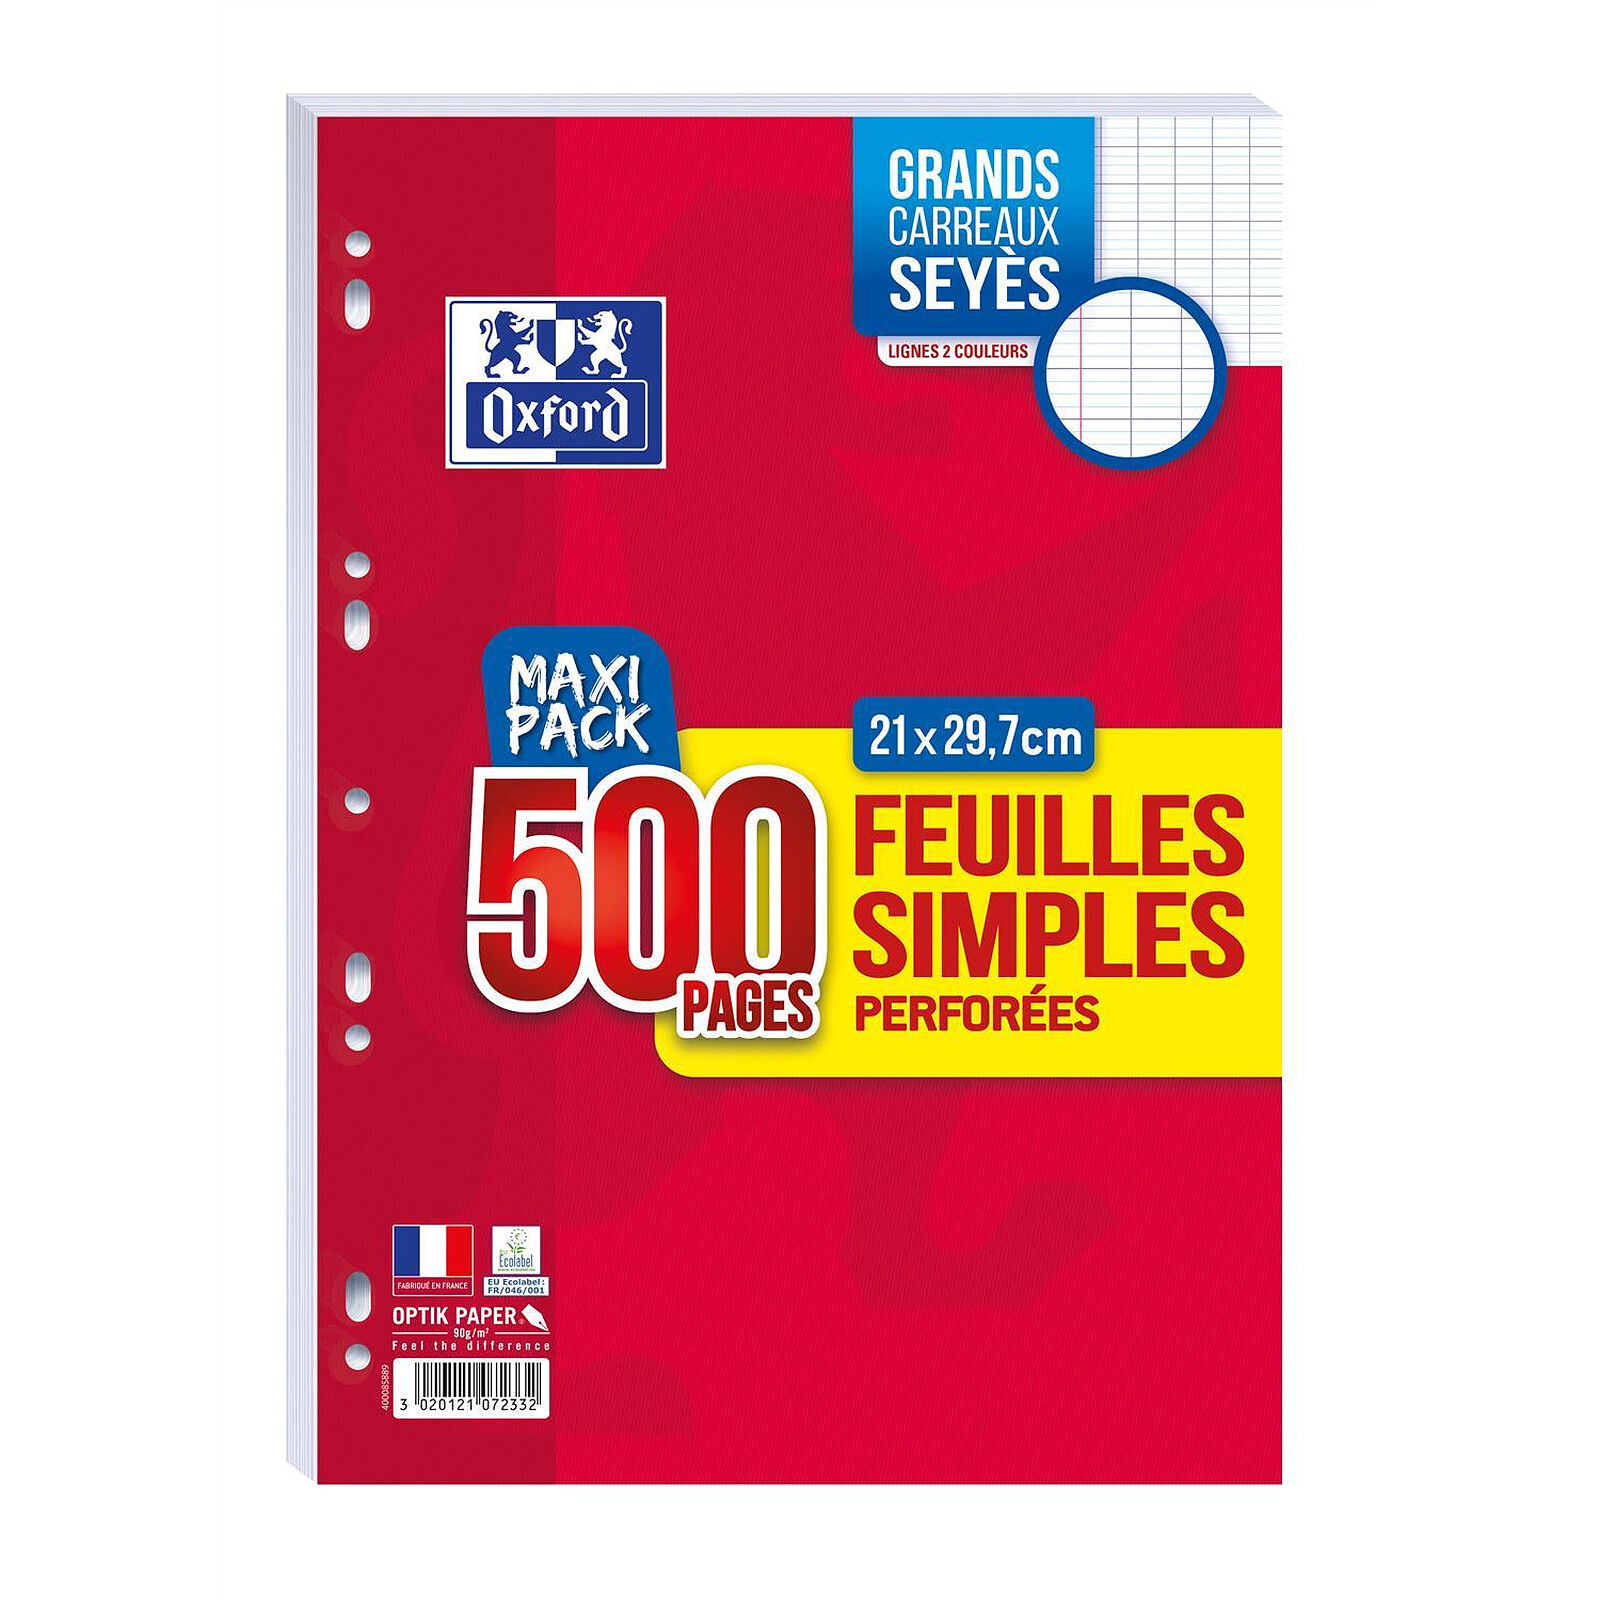 OXFORD paquet de 500 Pages Feuillets simples format A4 seyès perforées 90 g  - Papier spécifique - LDLC